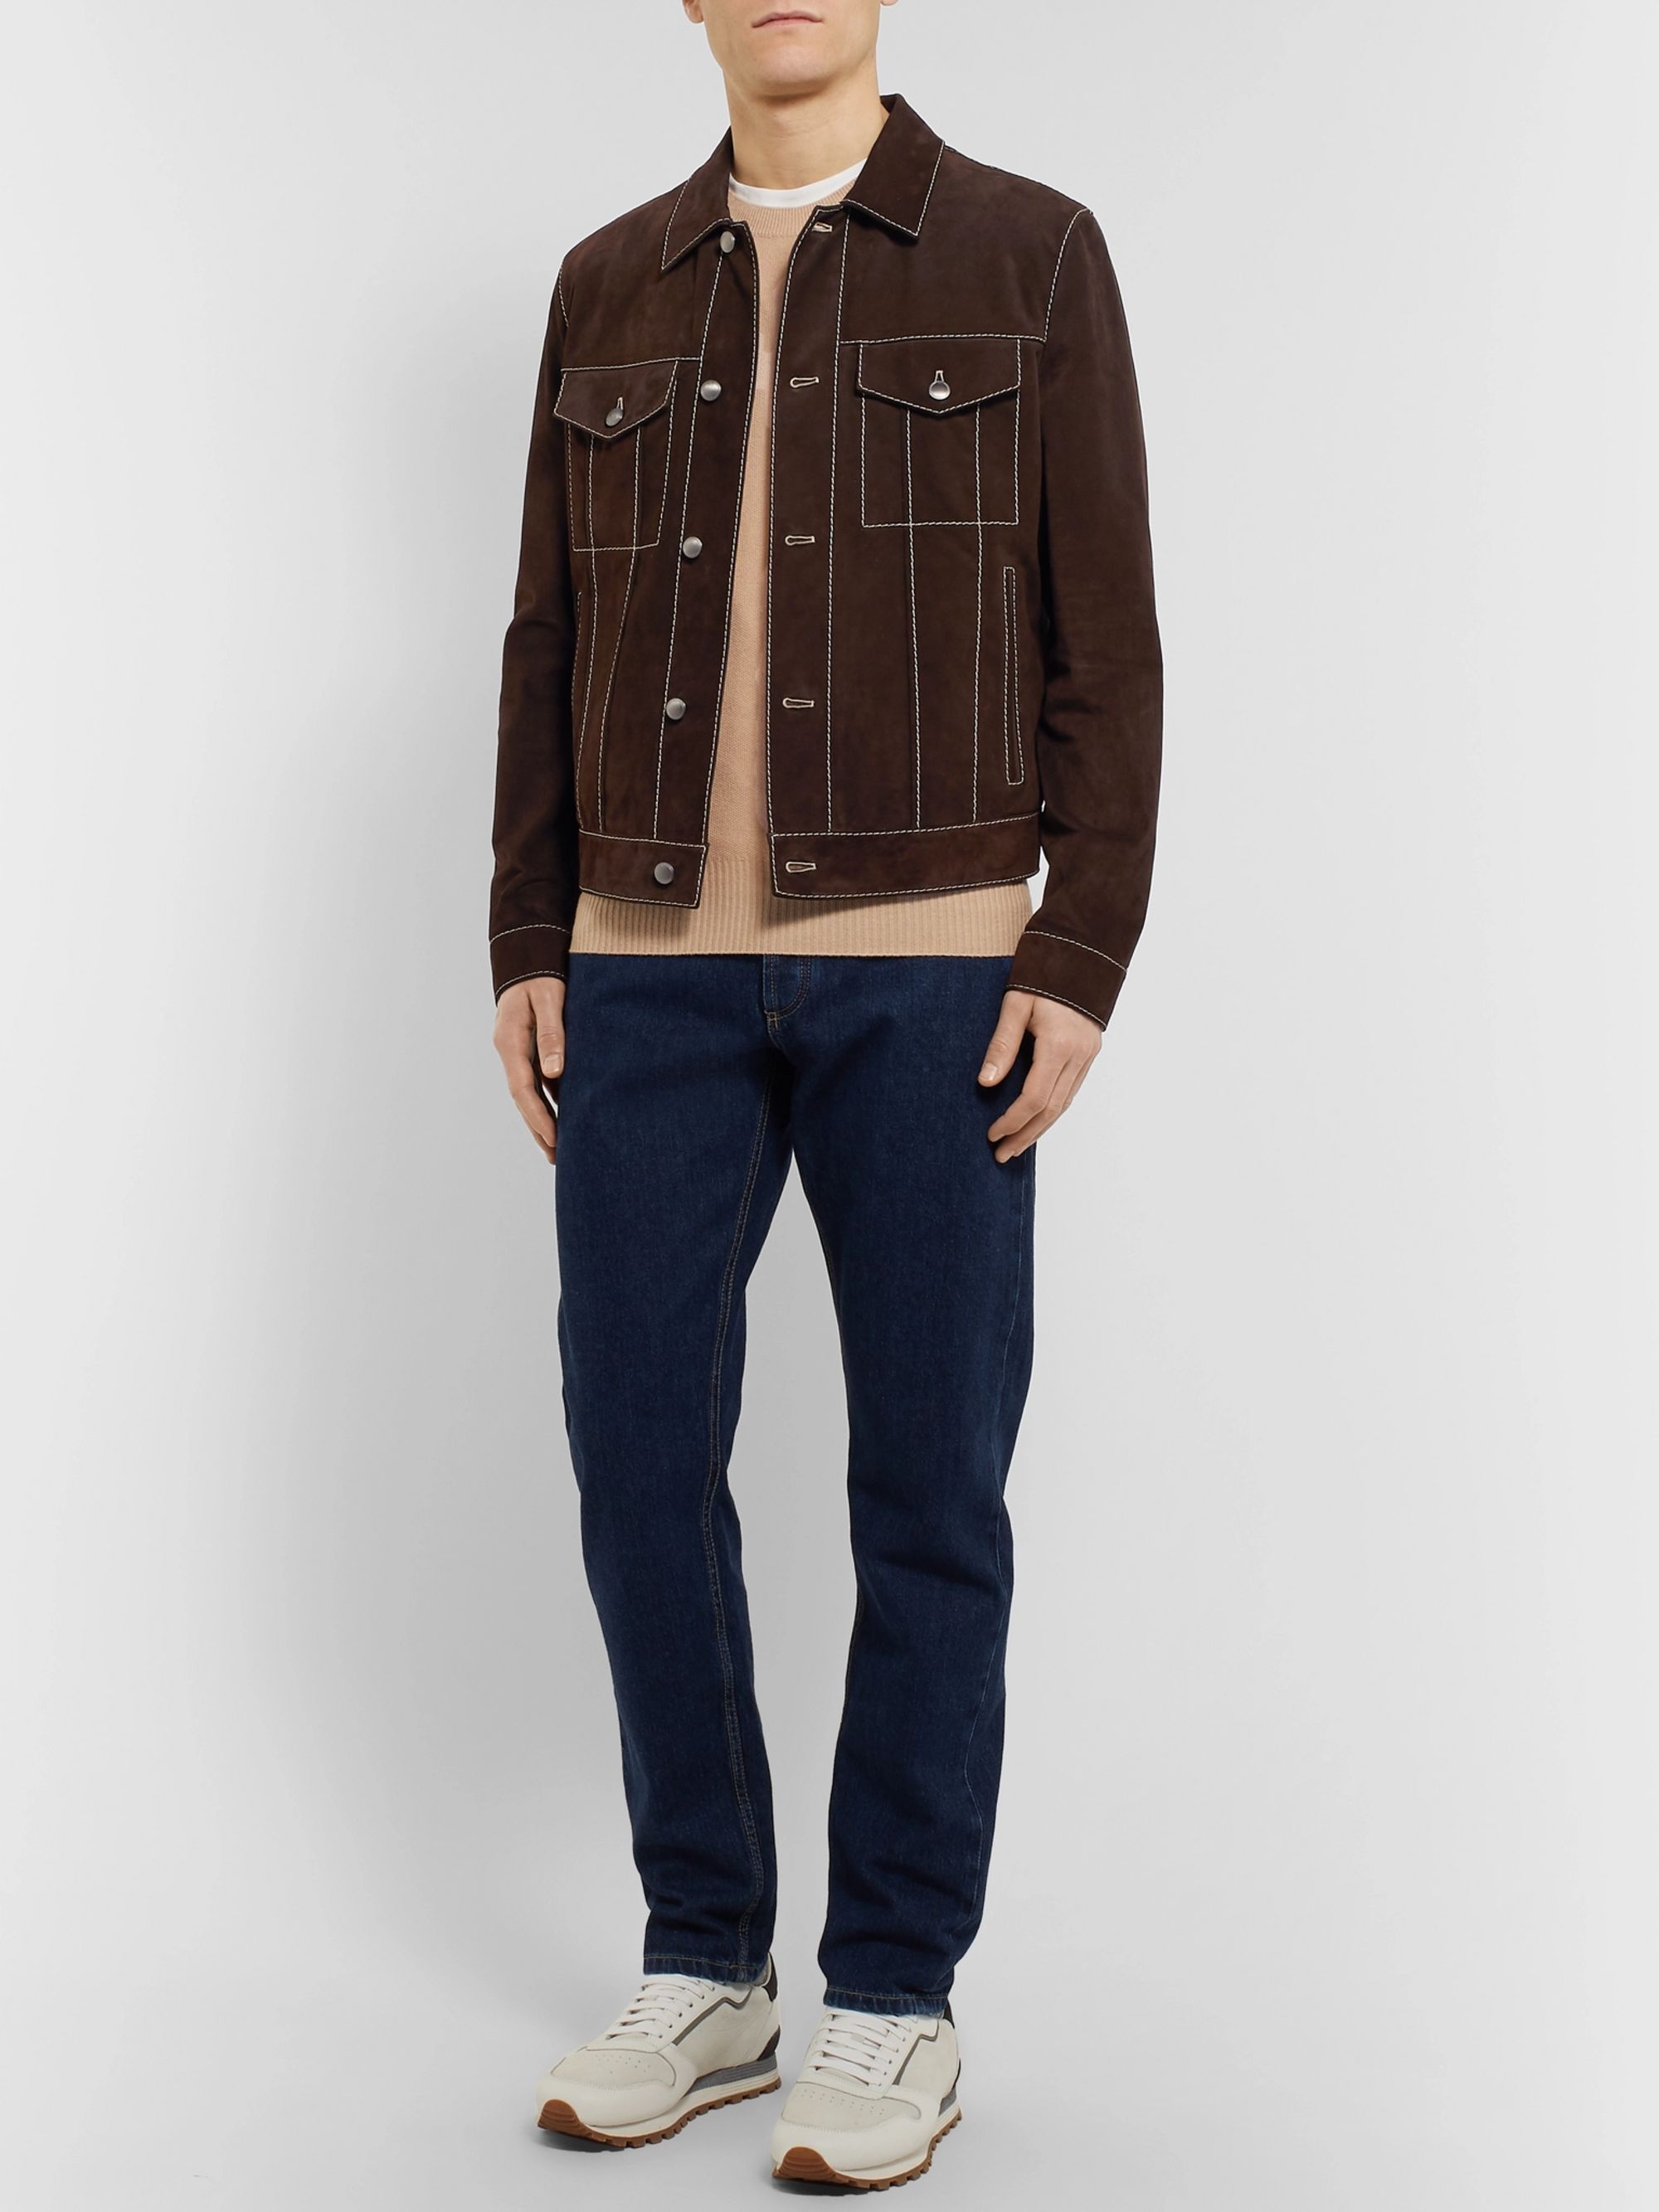 Leather Jackets for Men | Designer Menswear | MR PORTER